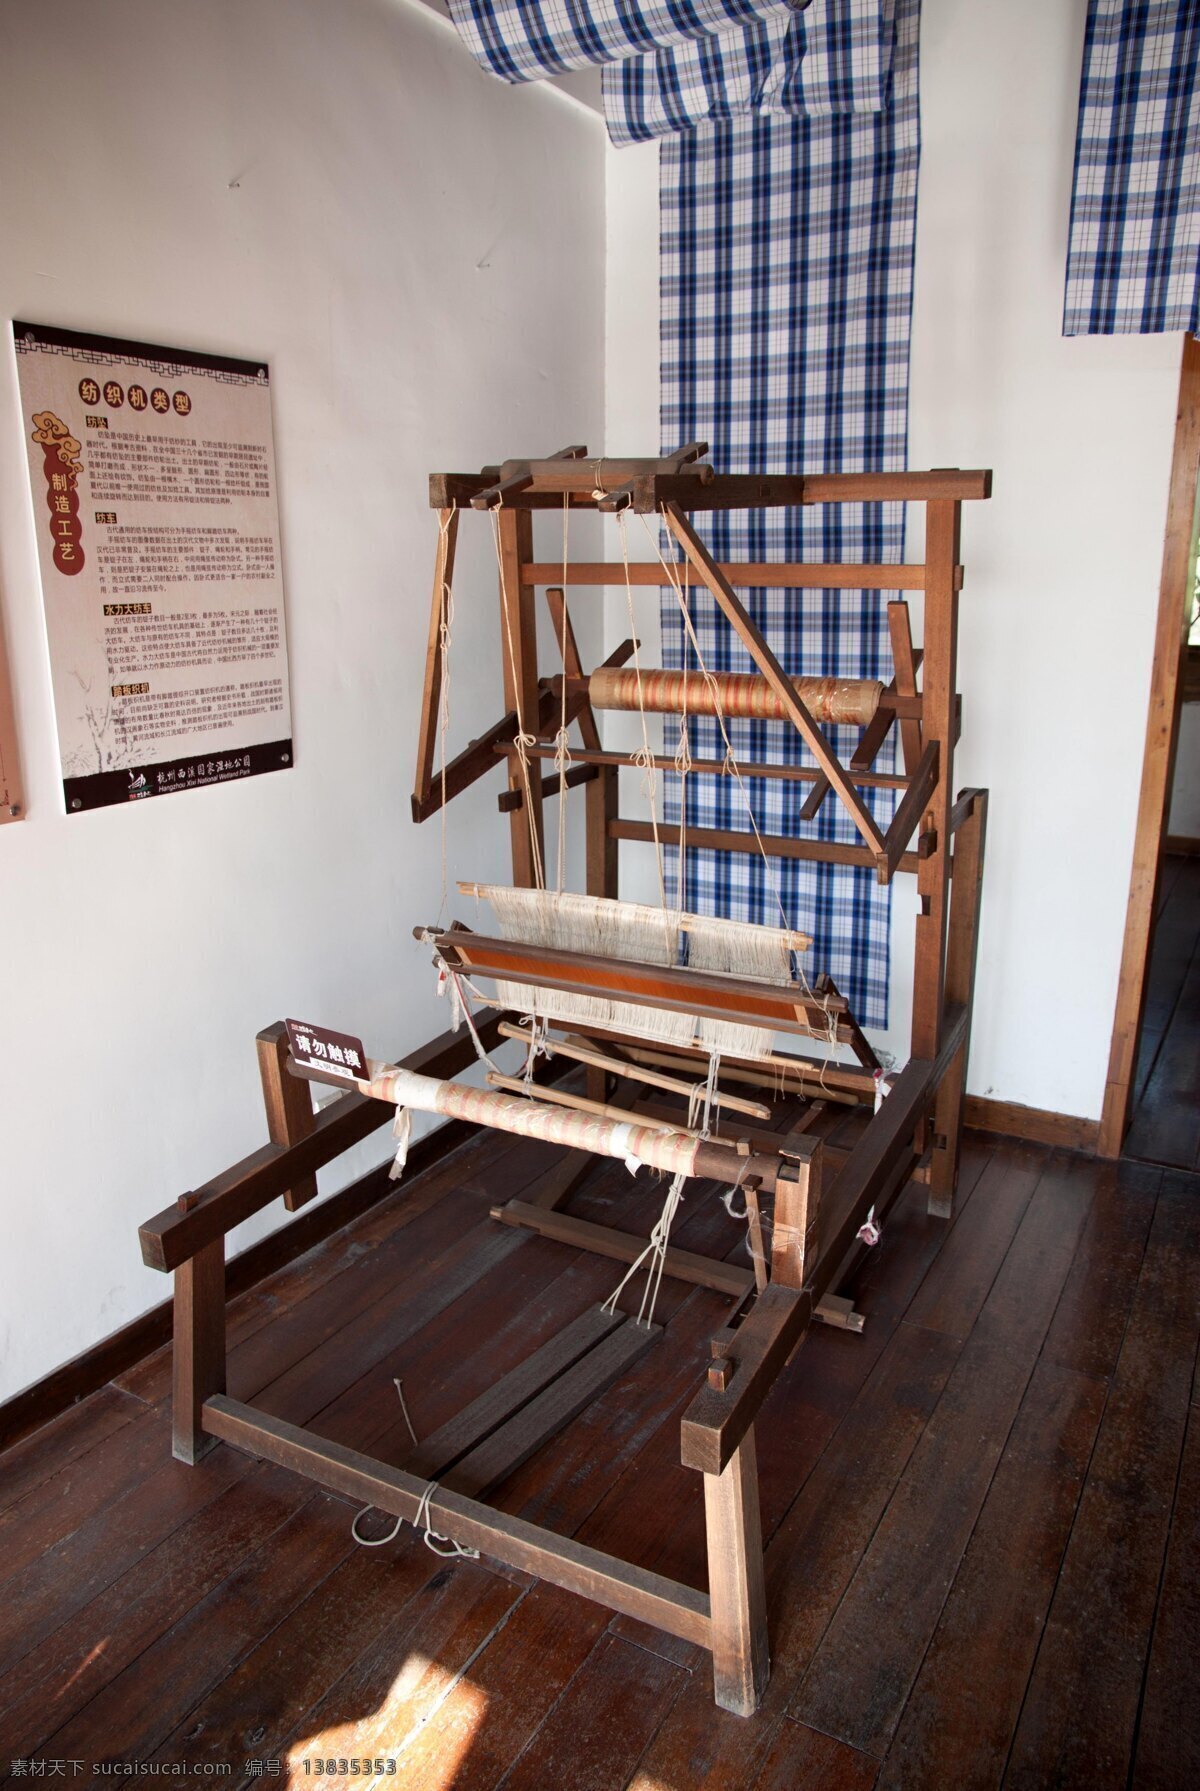 织布机 老物件 梭子 手工 纺织工艺 纺织工艺流程 展厅 展示 非物质文化 传统文化 文化艺术